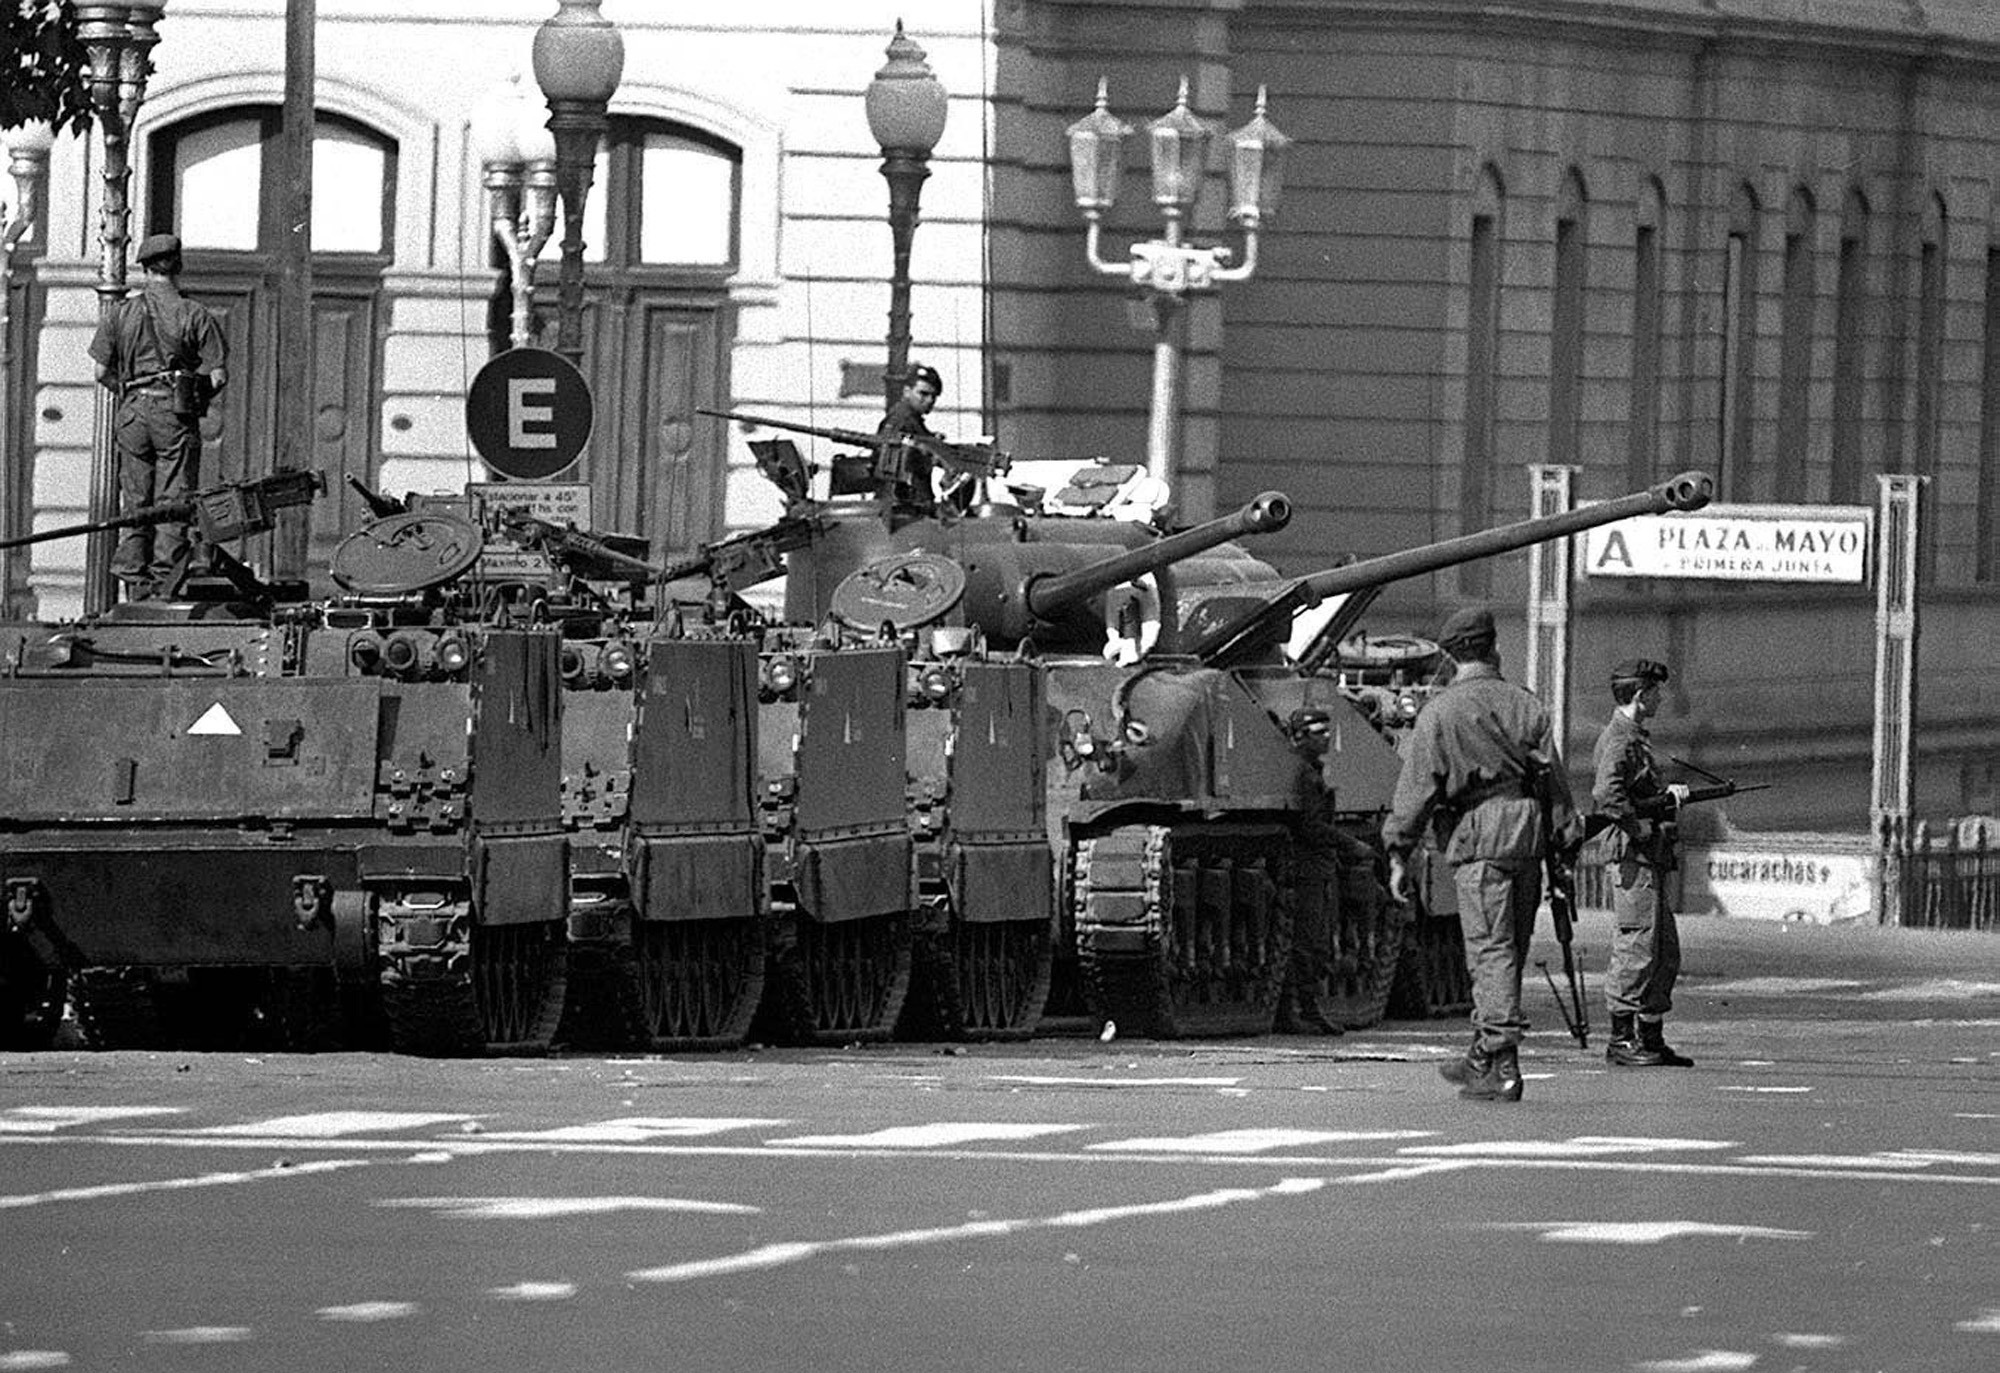 Svartvit bild där pansarfordon syns på Plaza de mayo i Buenos Aires, under militärkuppen 1976.